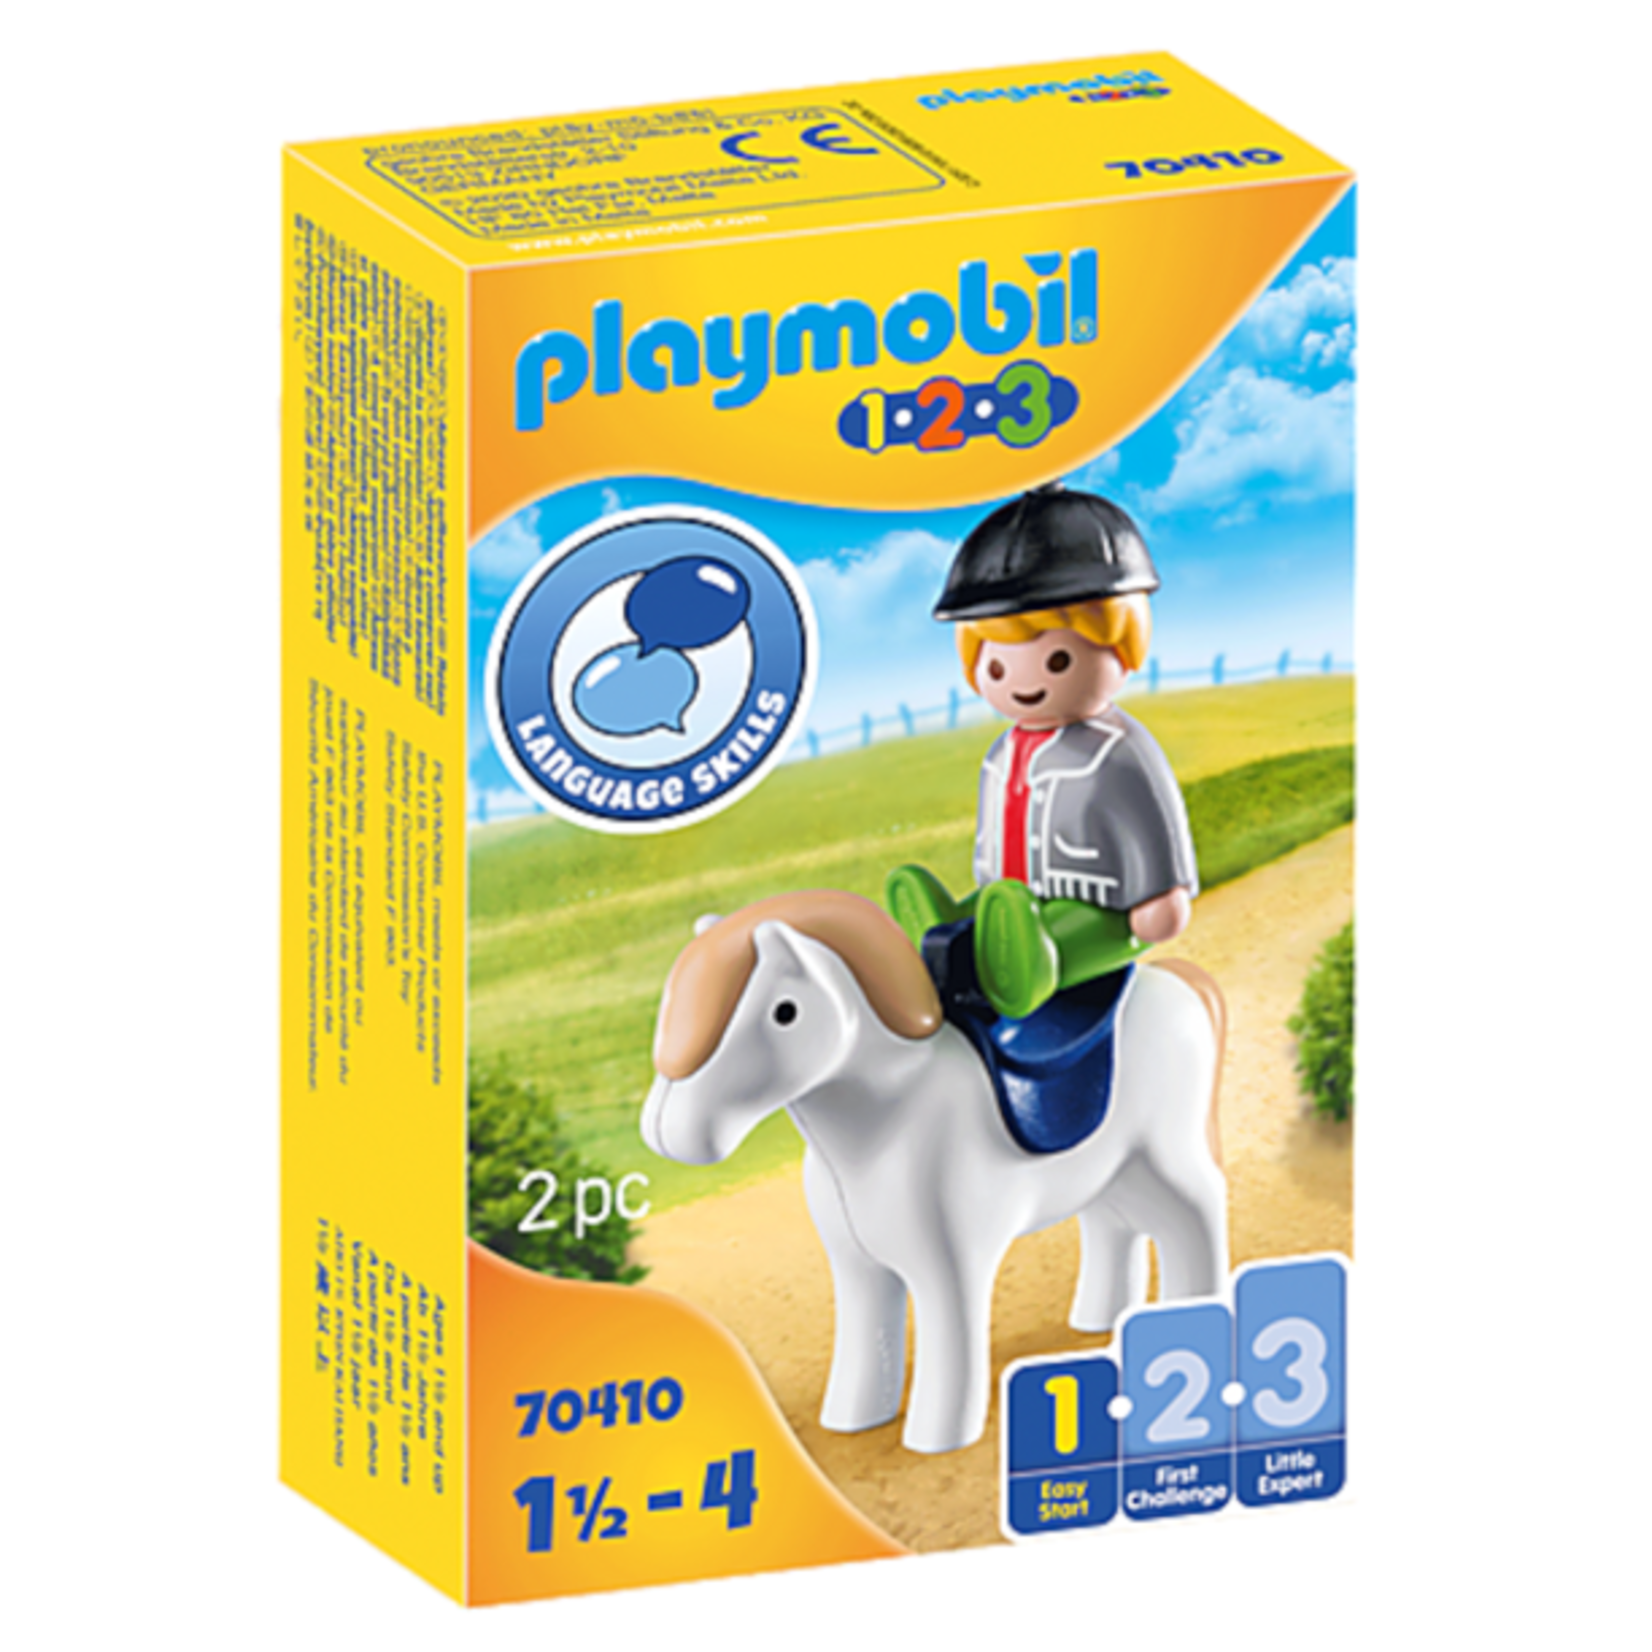 Playmobil Boy with Pony - Playmobil 1,2,3  70410